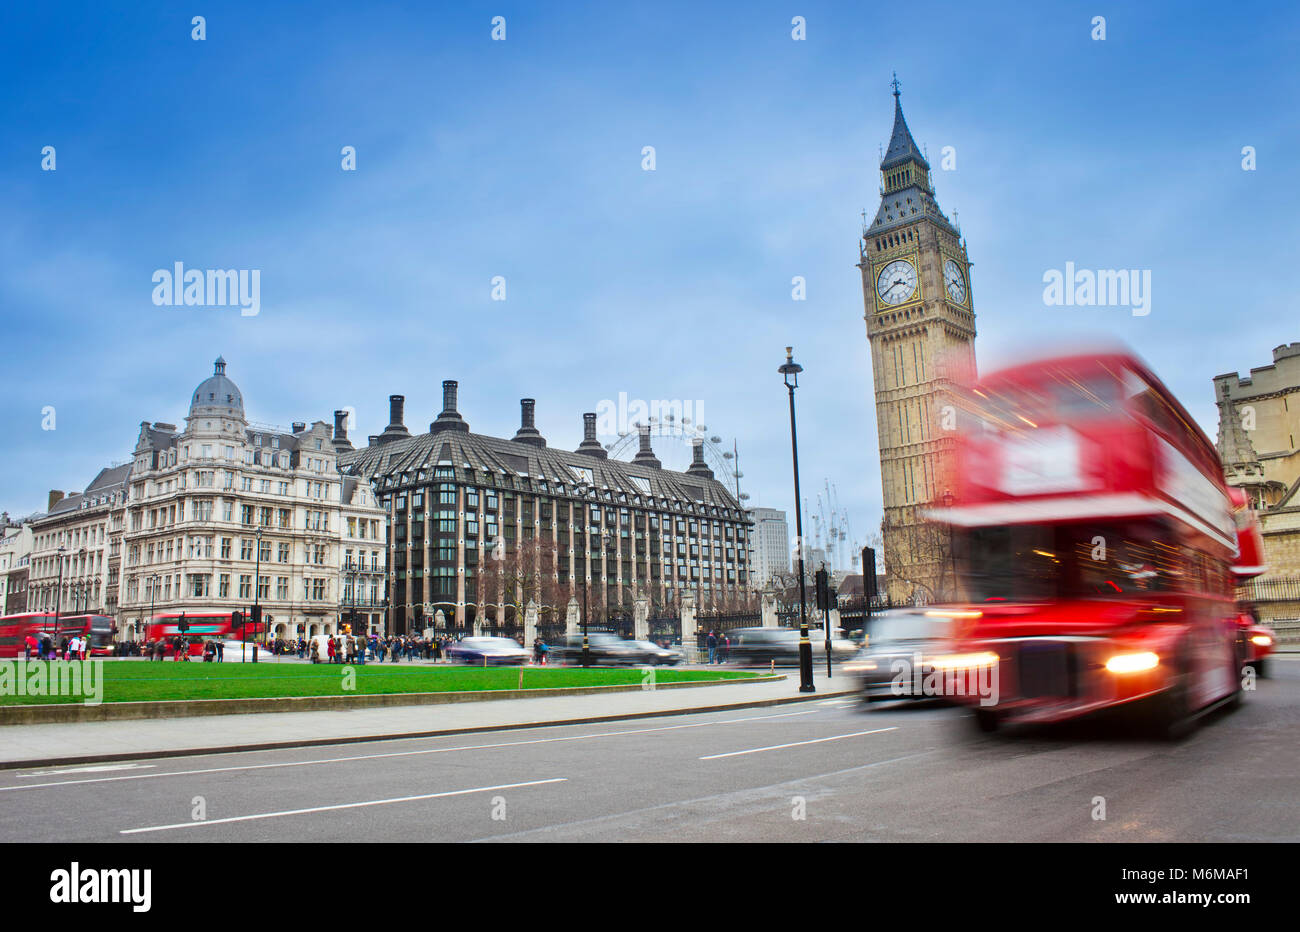 Il centro di Londra in scena con bus rosso e il Big Ben in background. Una lunga esposizione foto Foto Stock